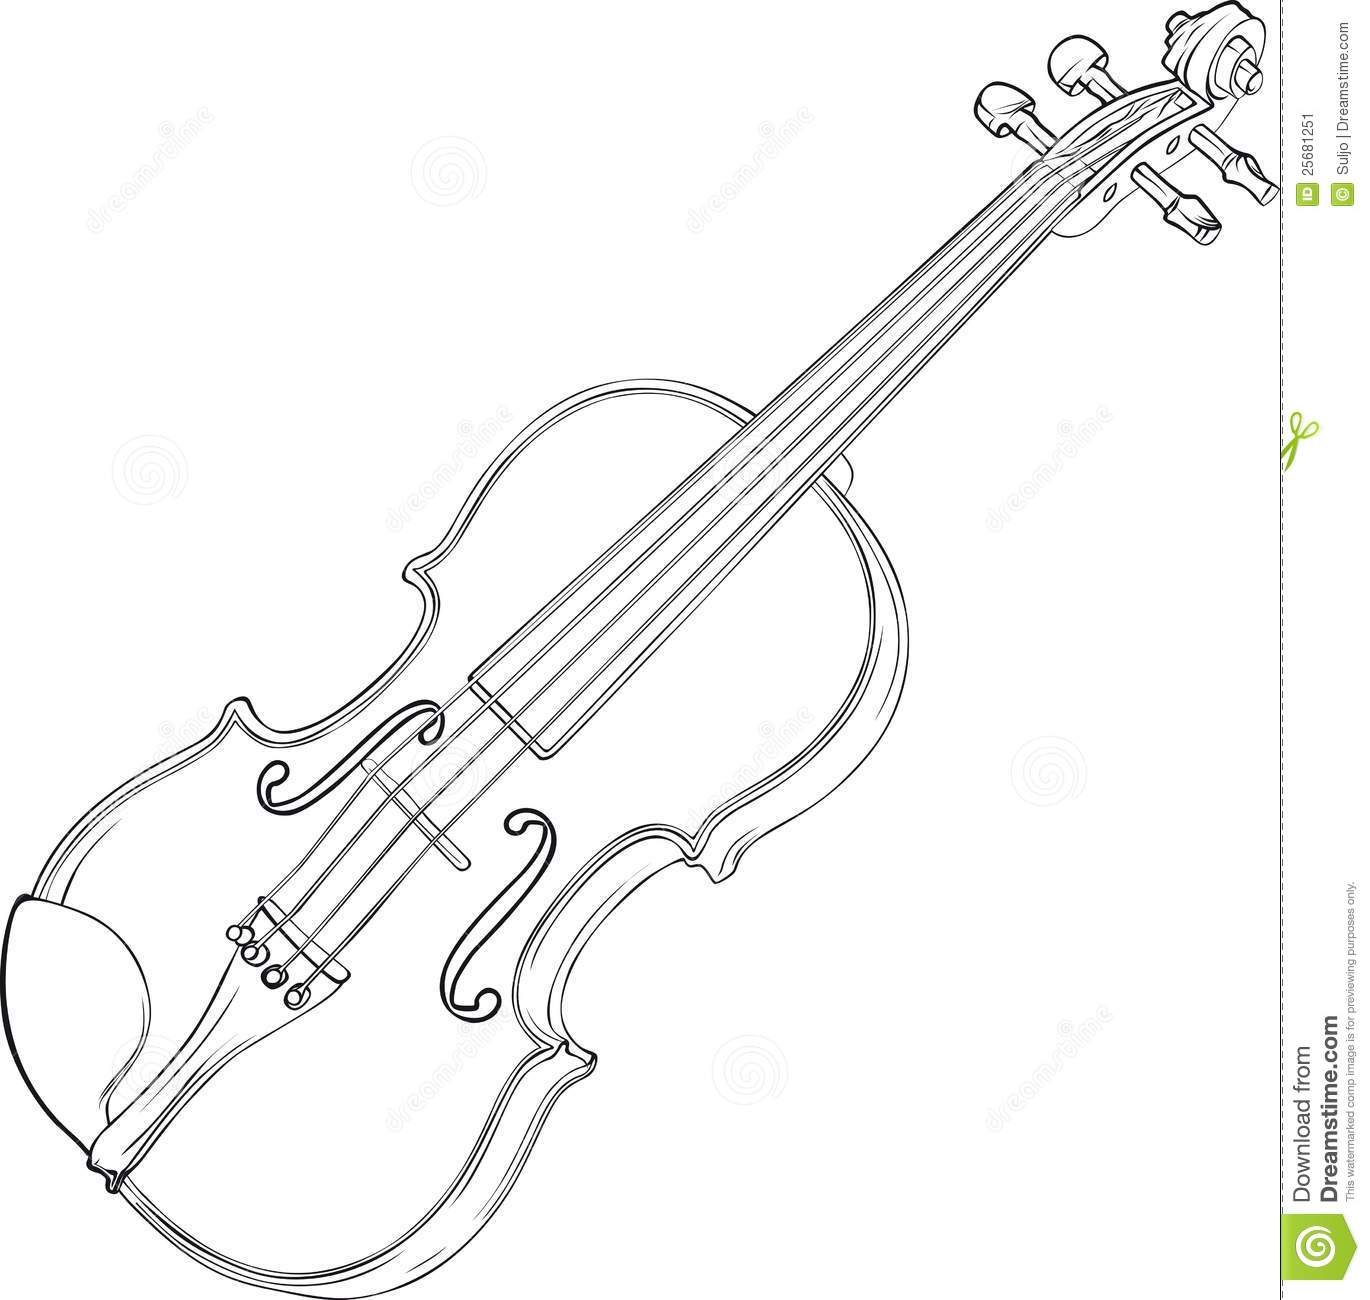 Desenho Do Violino Imagem De Stock